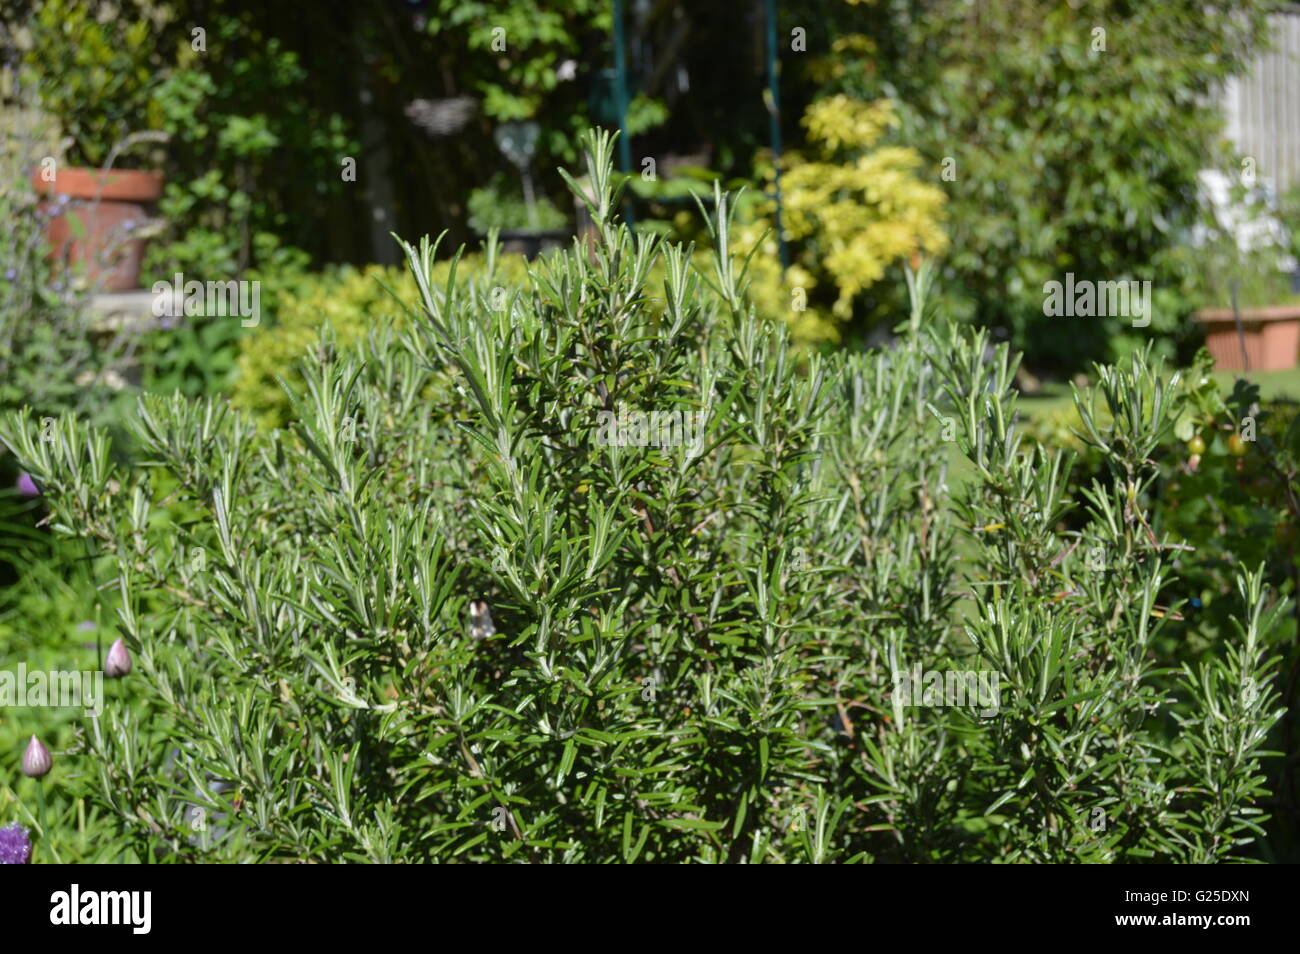 Erbe - il rosmarino (Rosmarino officinalis) comunemente conosciuto come rosmarino, è un'erba legnosa e perenne con le foglie profumate, sempreverde, simili ad ago Foto Stock